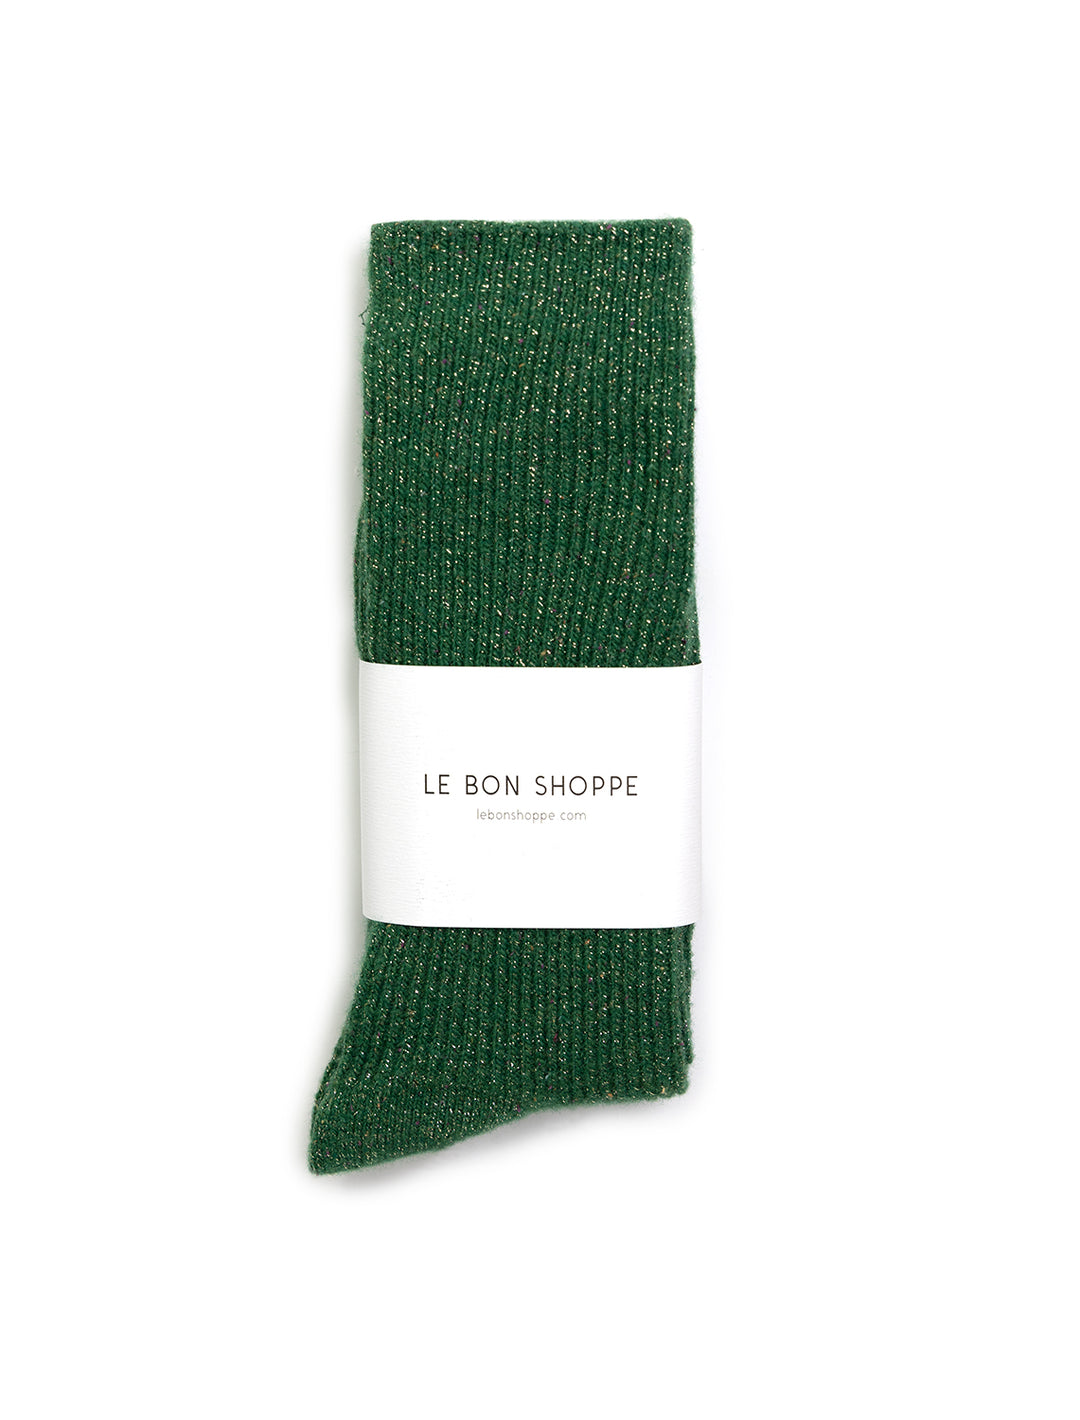 witner sparkle socks in evergreen